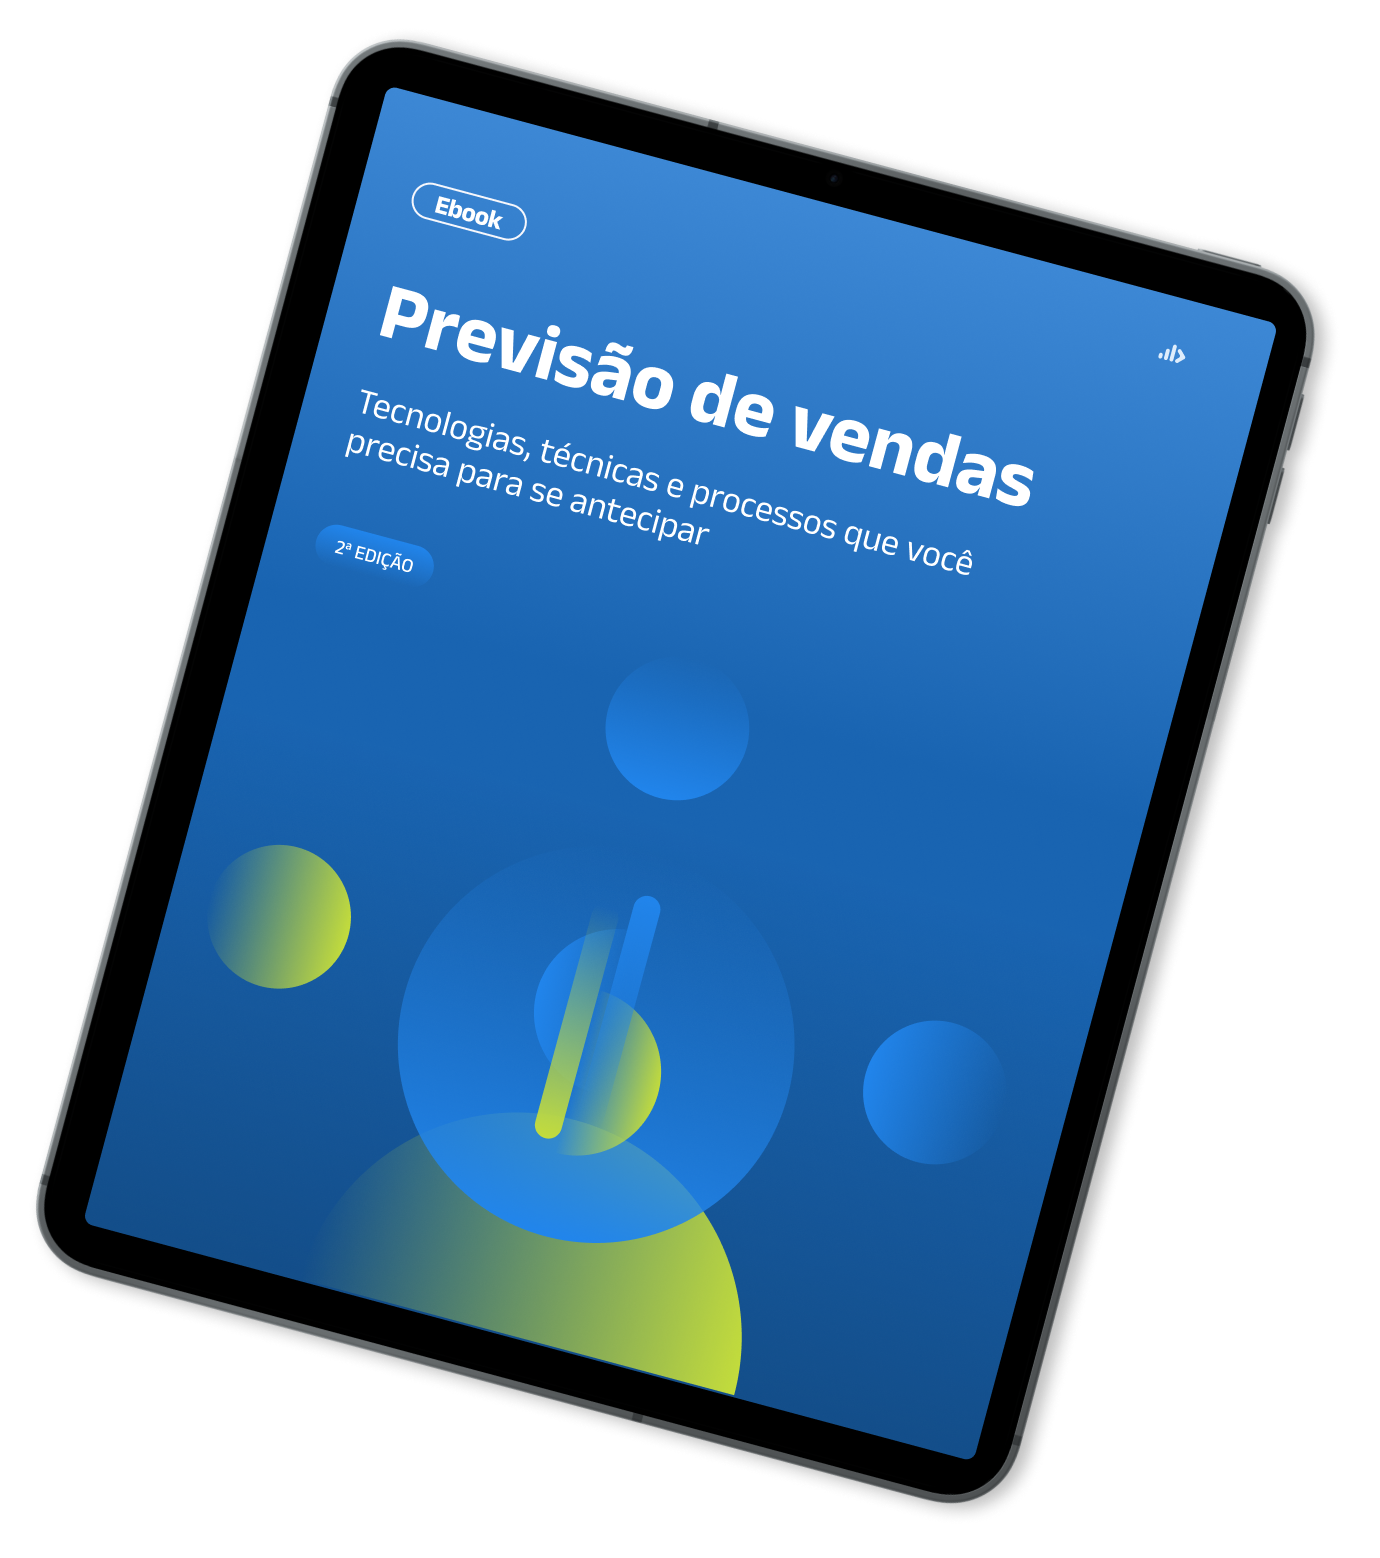 Mockup de Tablet com capa do Ebook - Previsão de vendas - 2a edição